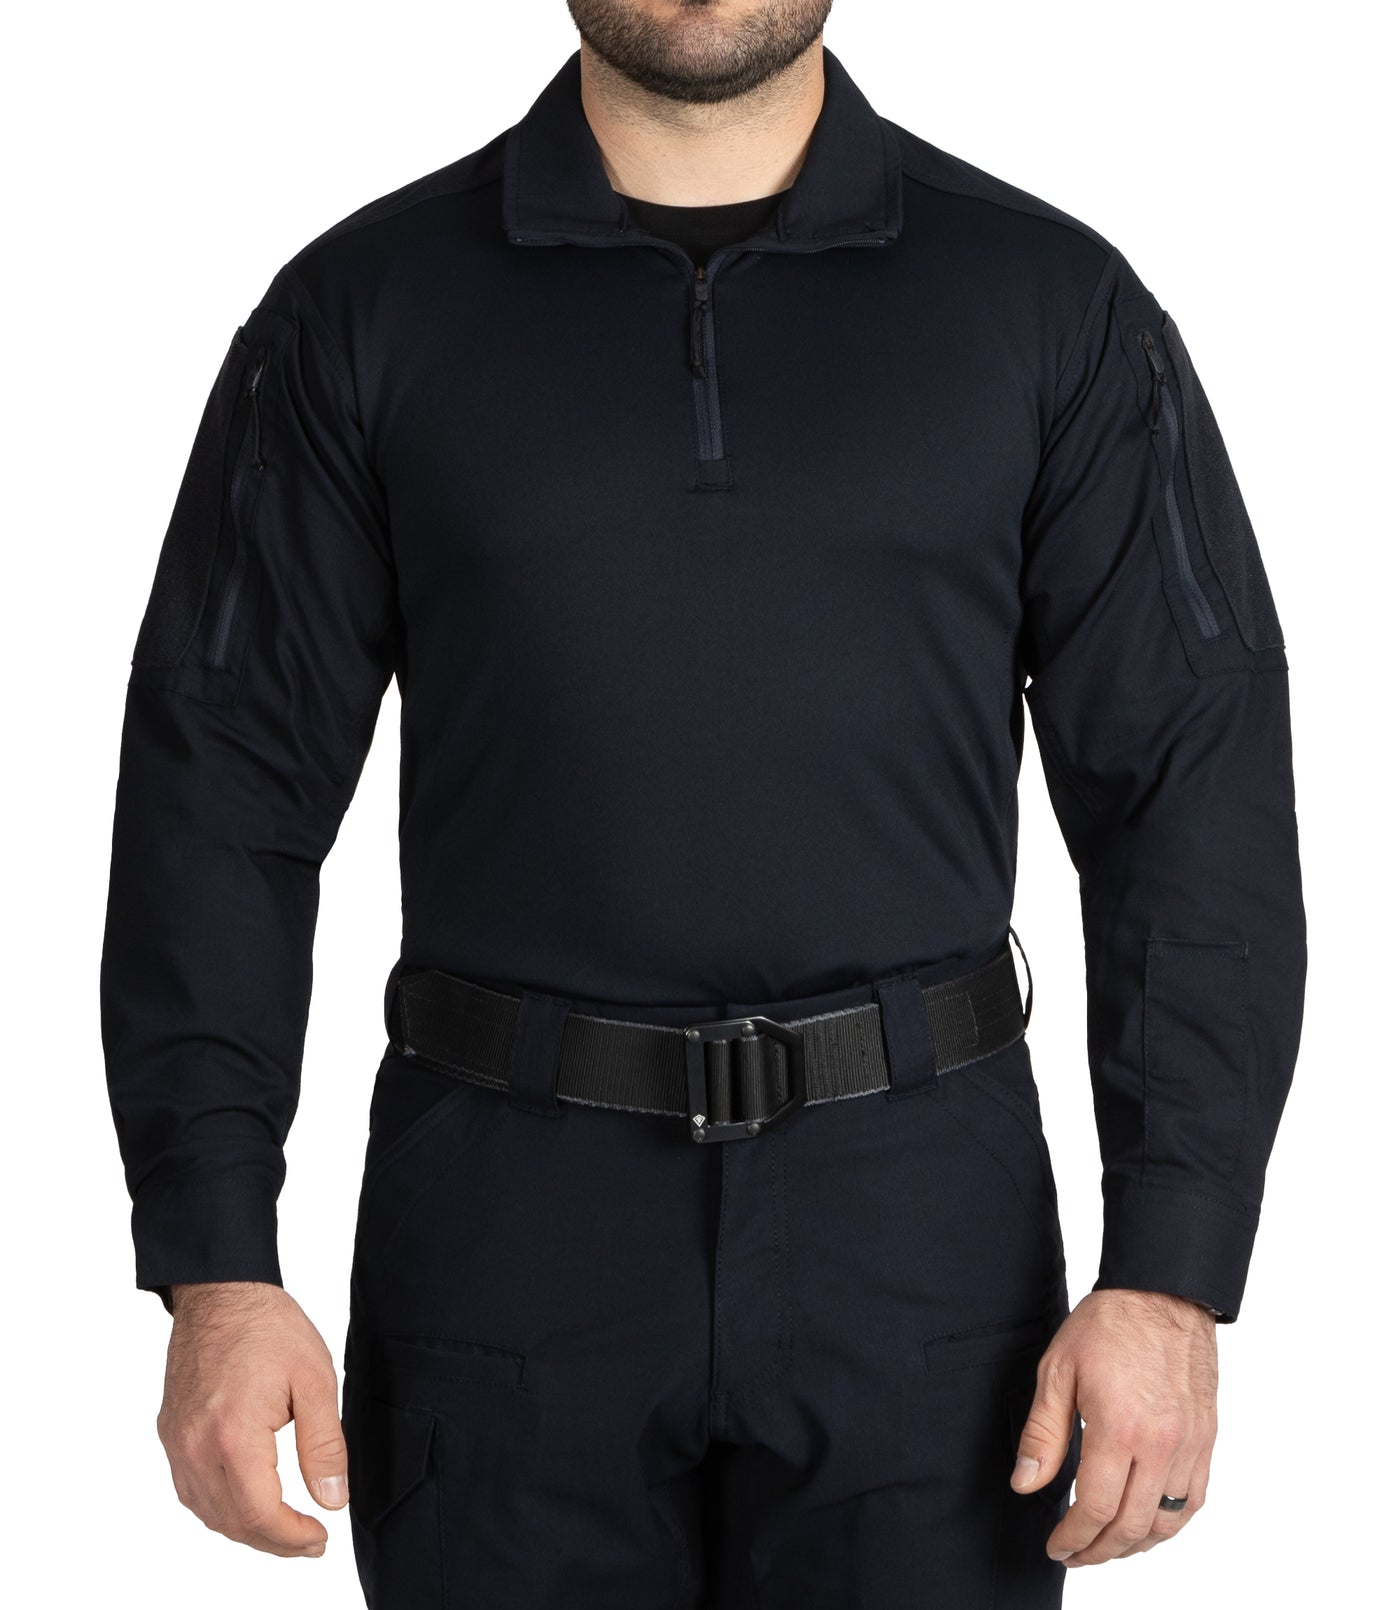 Men's V2 Responder Long Sleeve Shirt